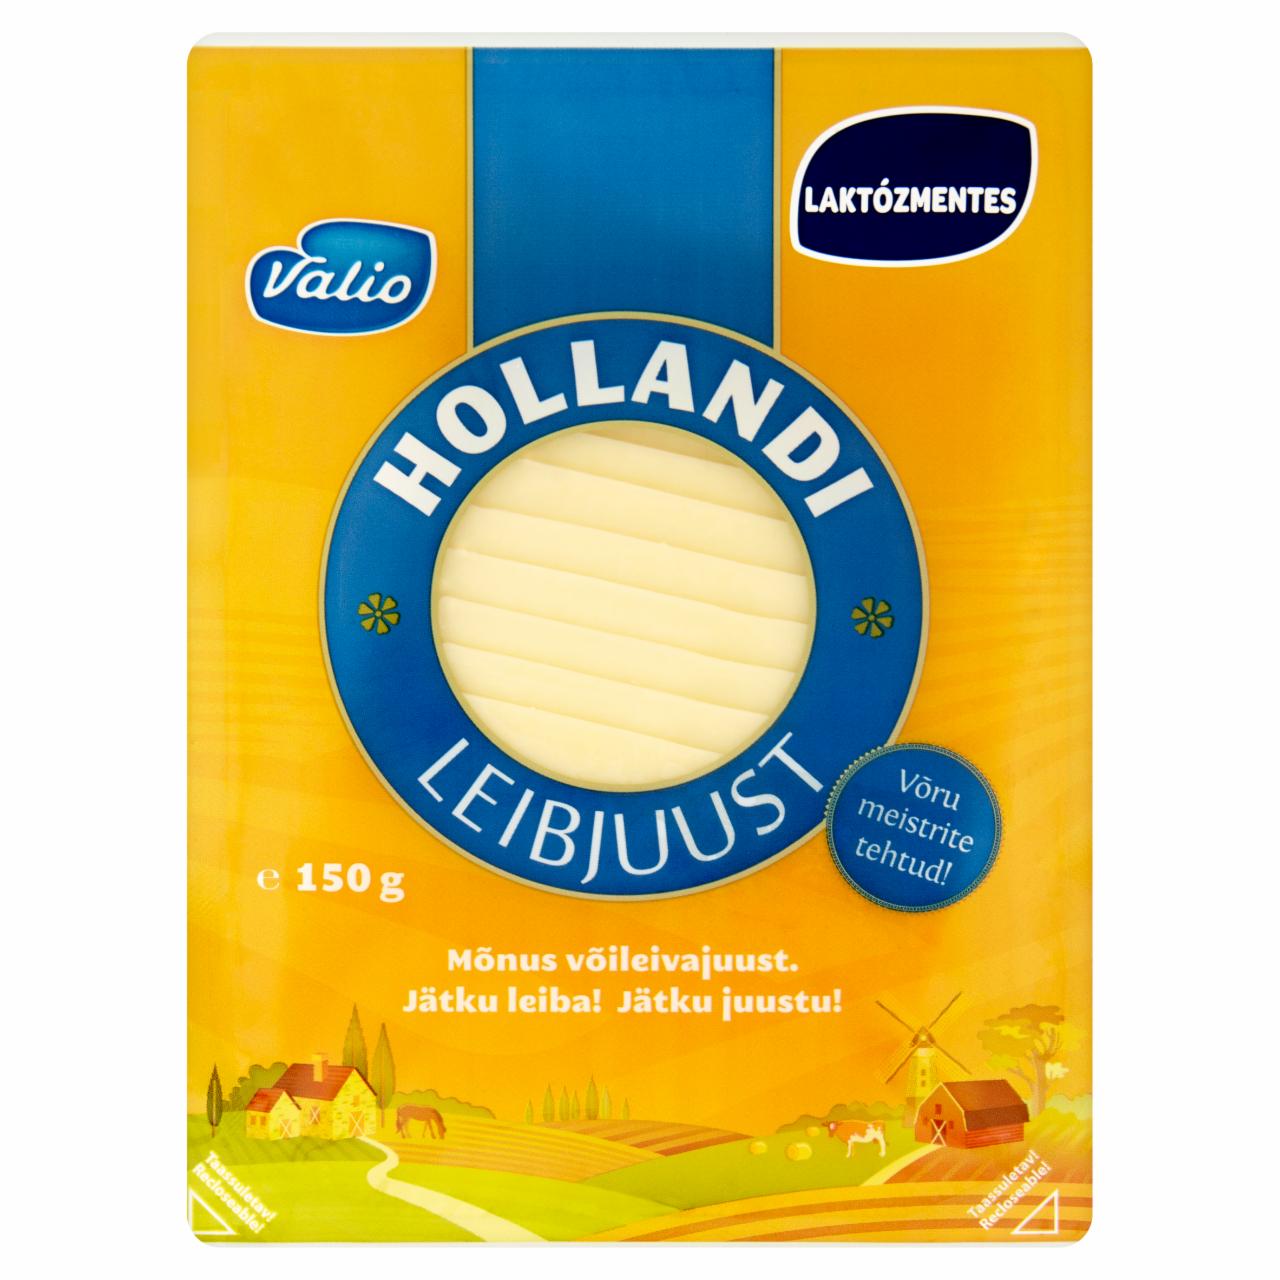 Képek - Valio laktózmentes, holland típusú, zsíros, félkemény sajt 150 g